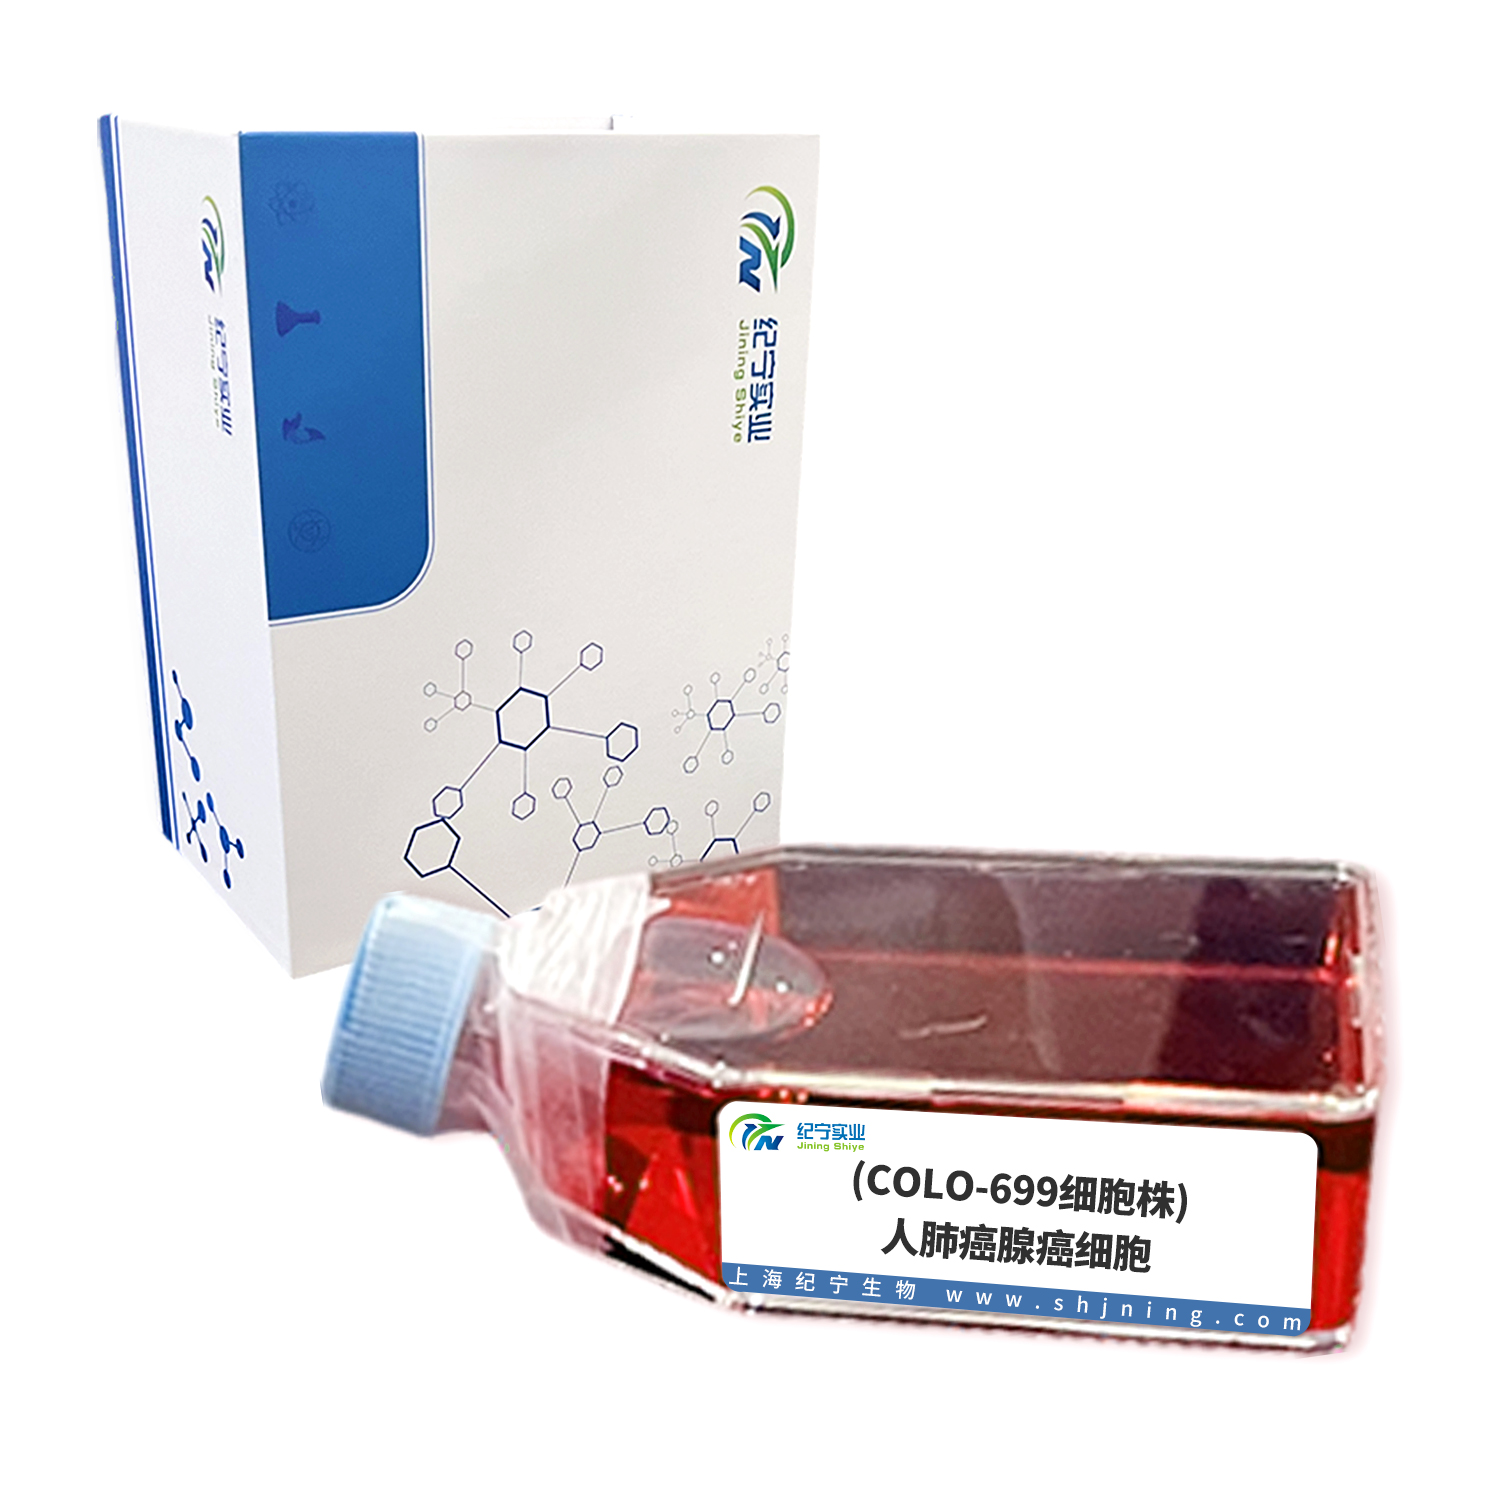 (COLO-699细胞株)人肺癌腺癌细胞